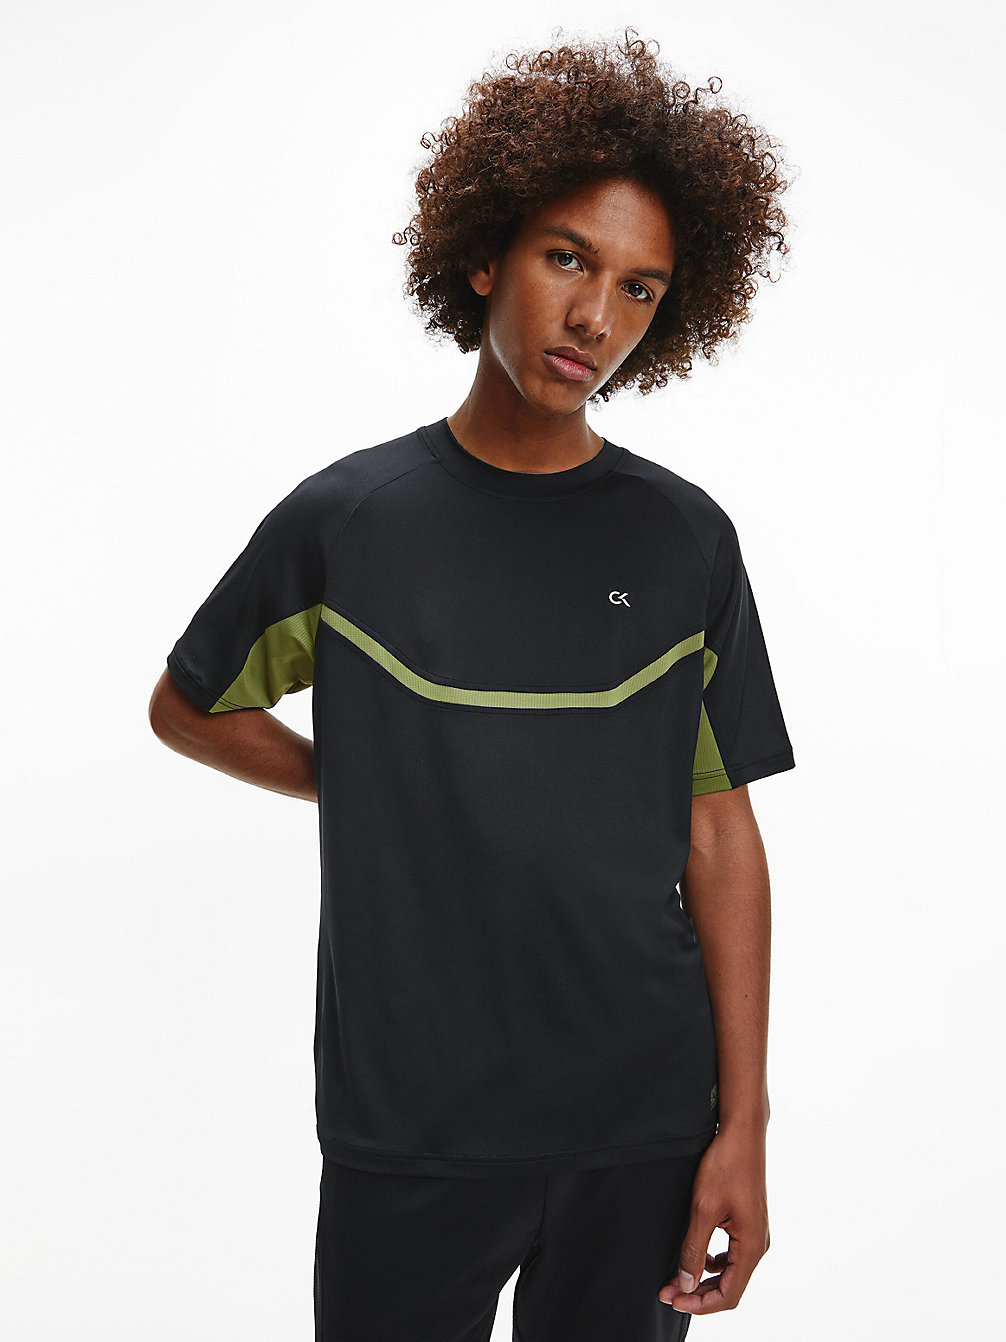 CK BLACK/CAPULET OLIVE Recycled Polyester Gym T-Shirt undefined men Calvin Klein